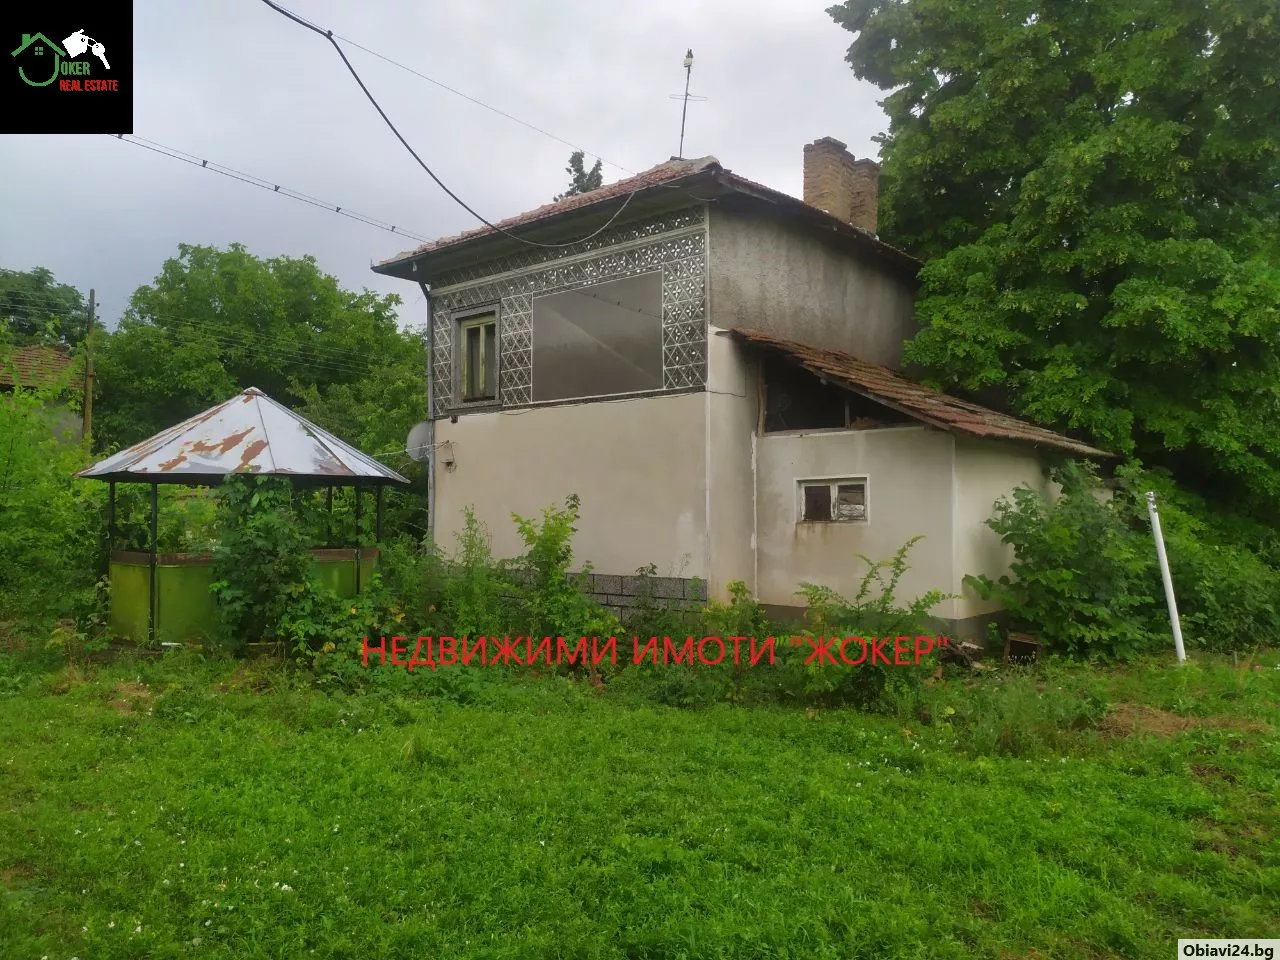 Двуетажна къща с двор в село Иванча - obiavi24.bg